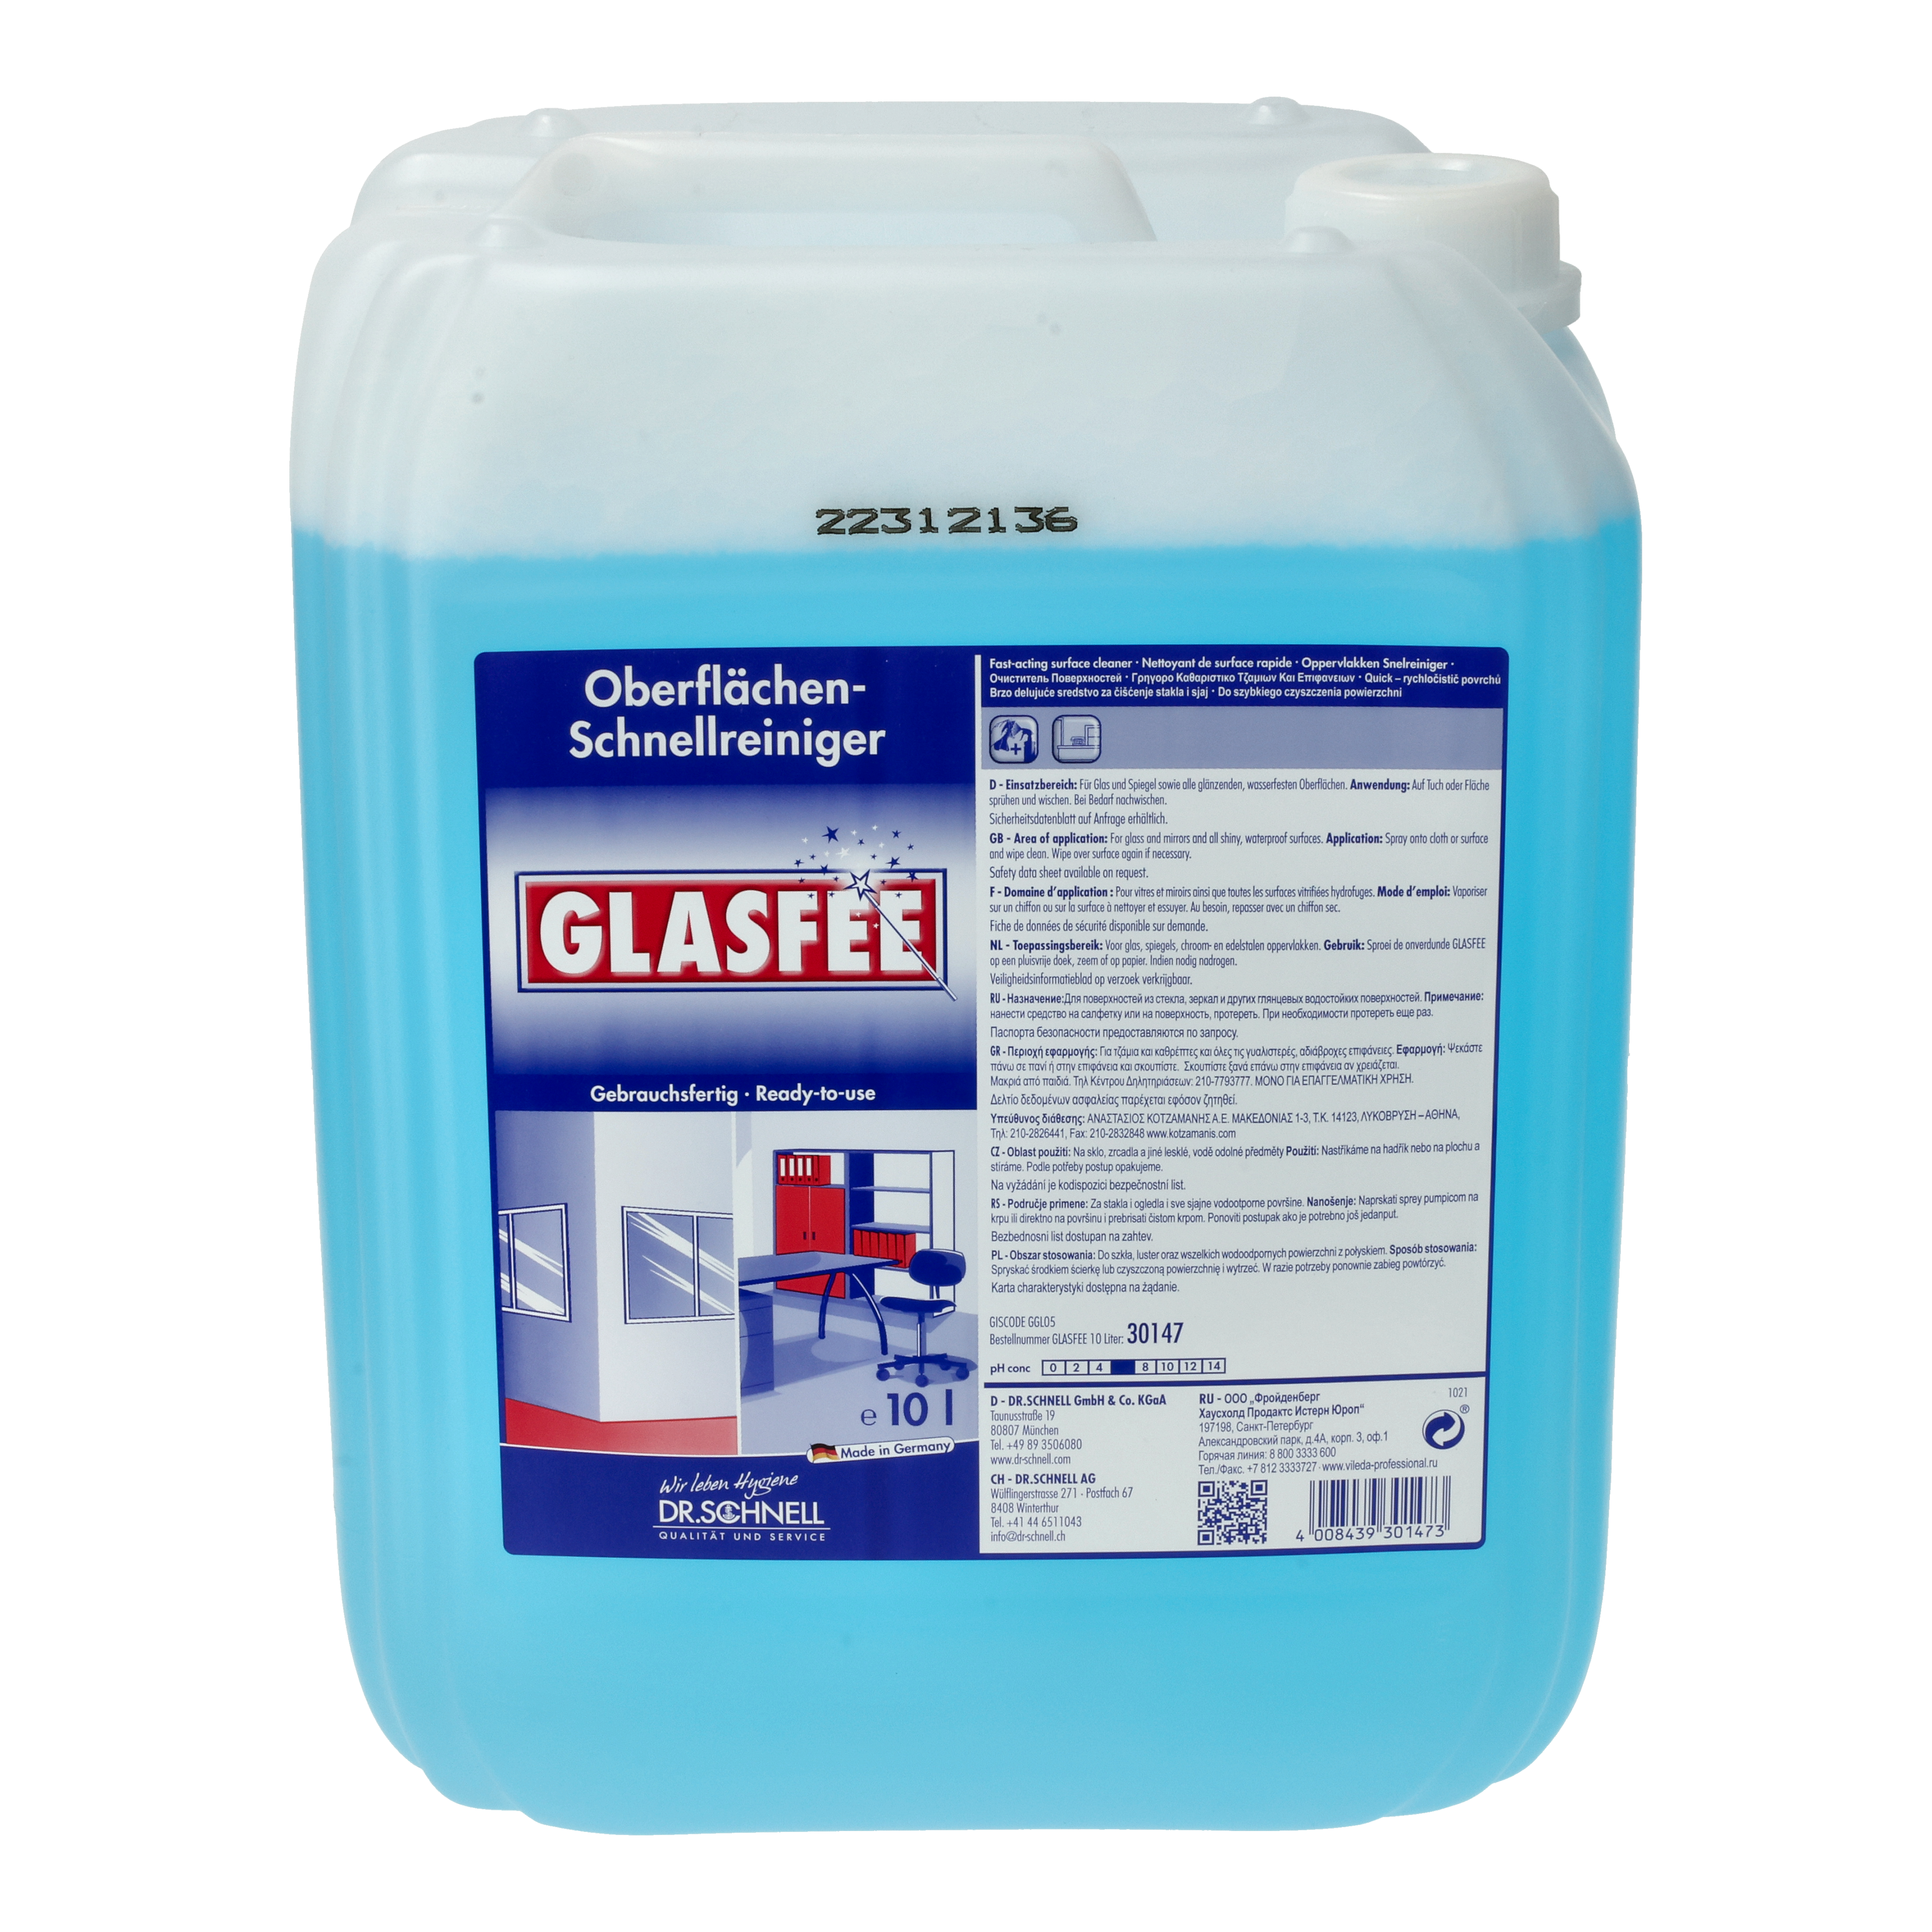 Ein Bild von Dr. Schnell GLASFEE Oberflächen-Schnellreiniger - 10 Liter